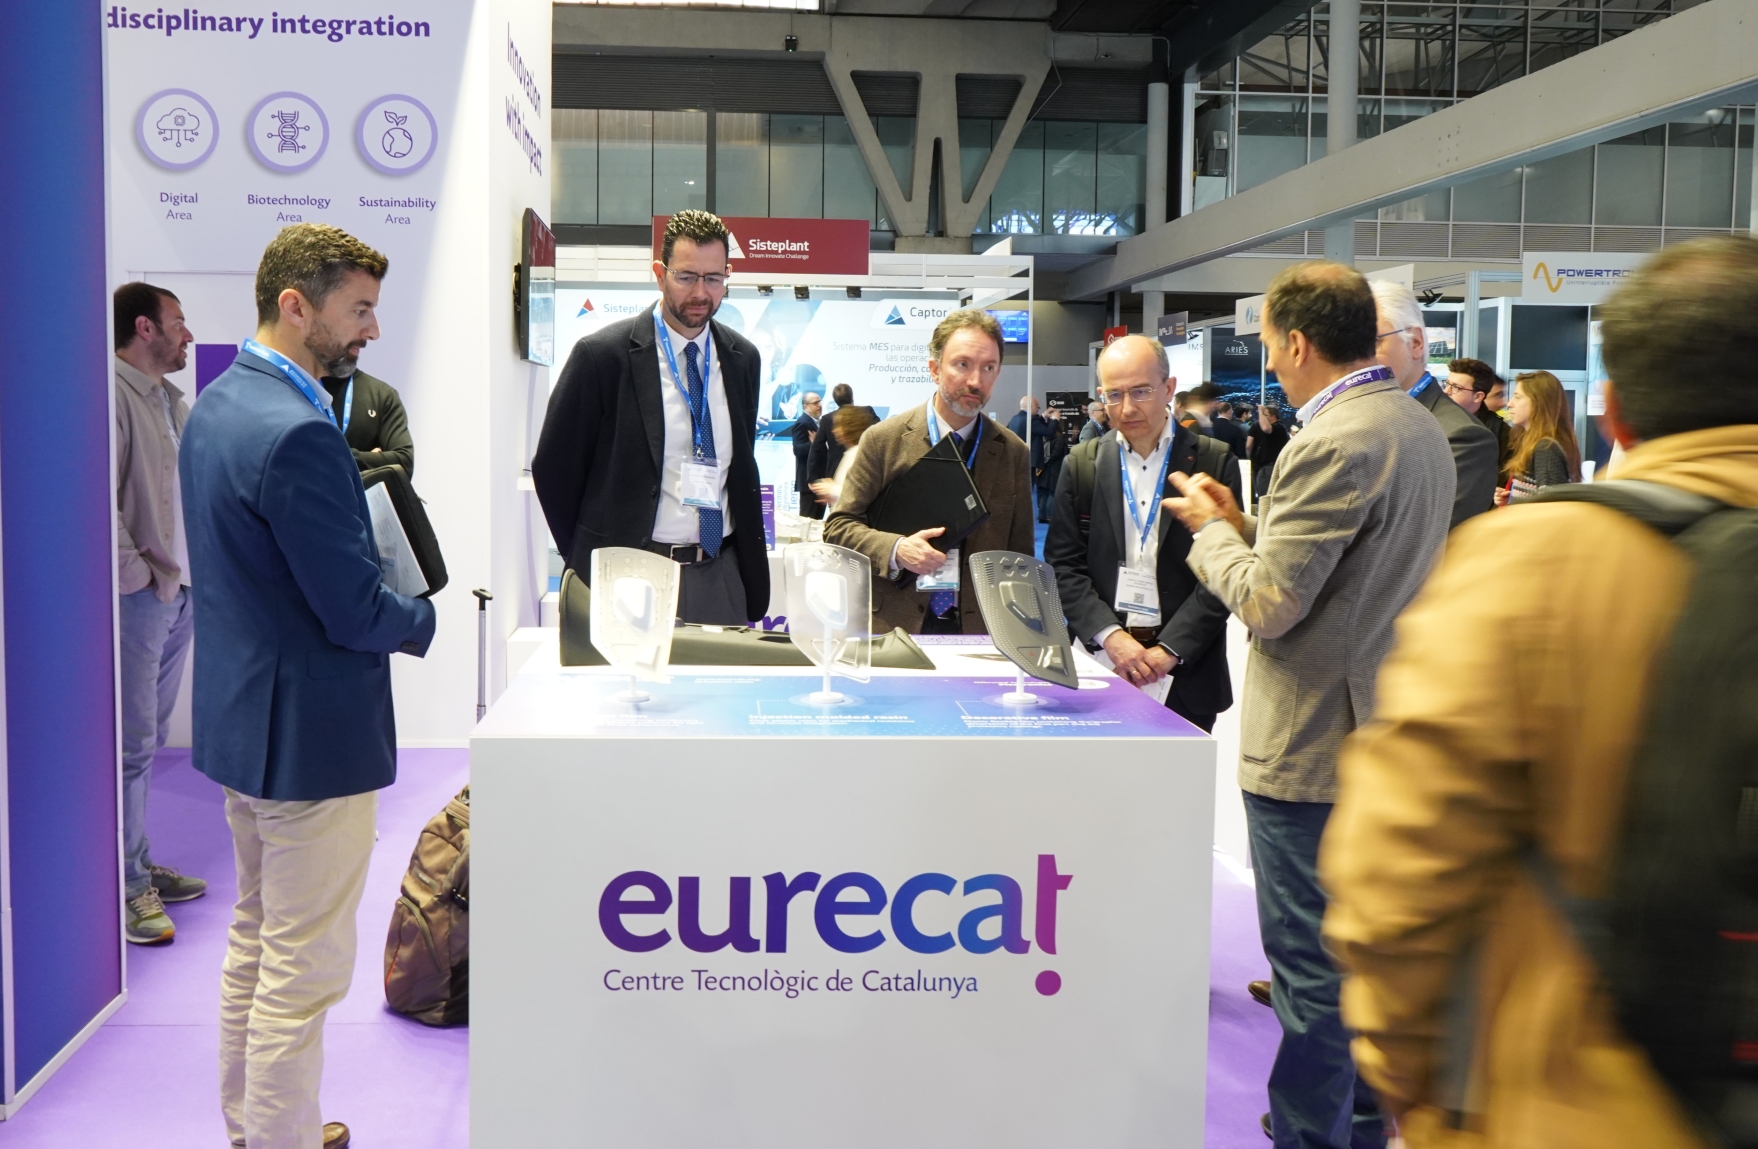 Eurecat aplica la inteligencia artificial en nuevas soluciones de fabricación avanzada para el sector textil, automoción y construcción